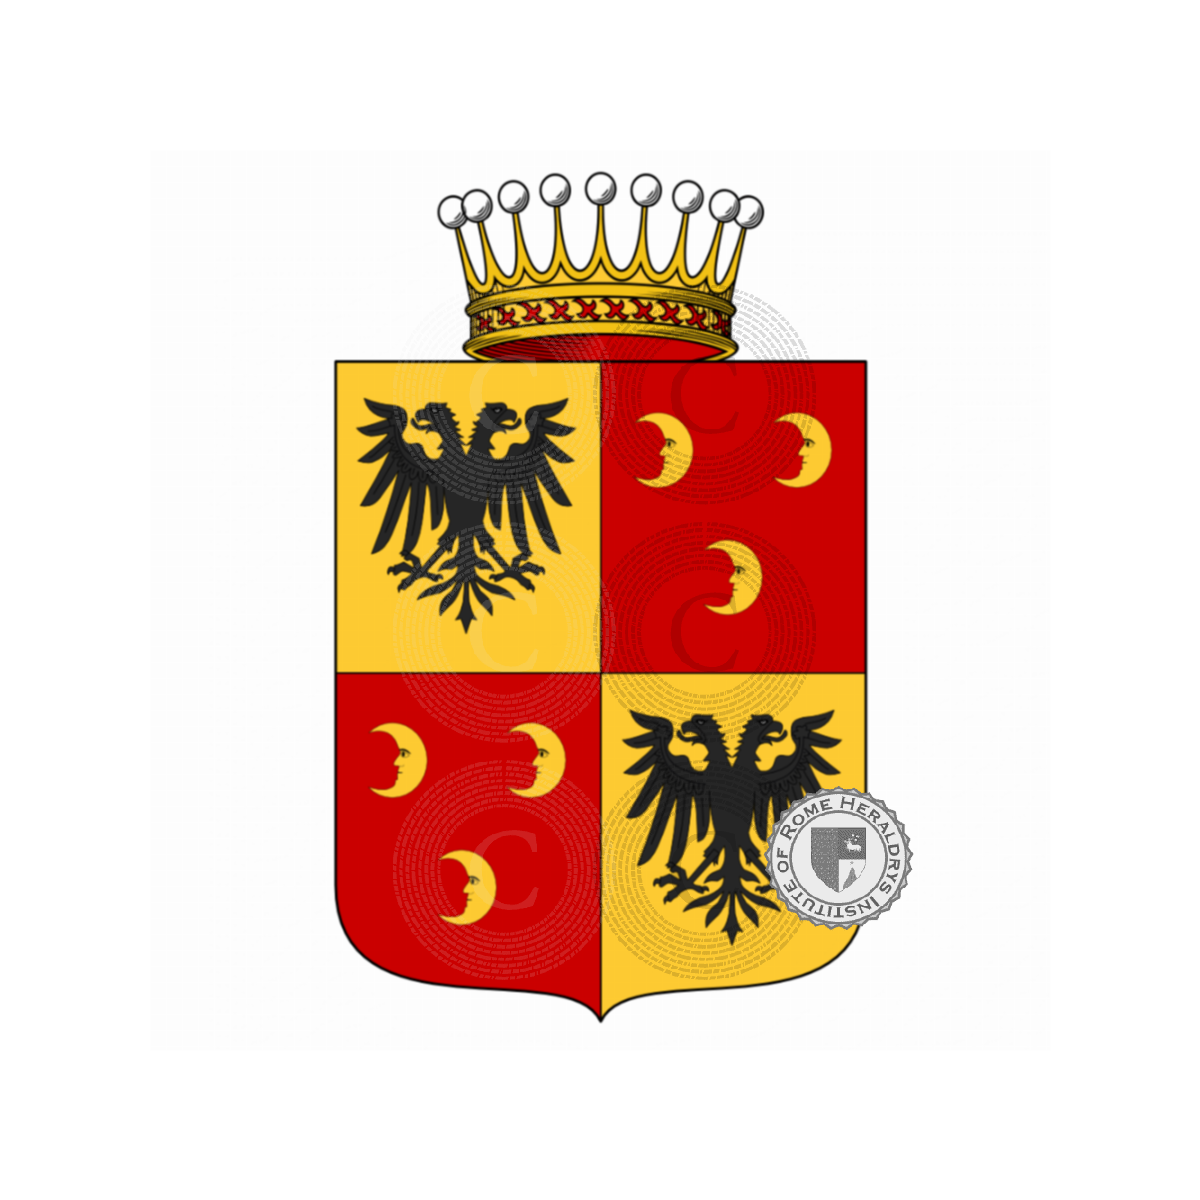 Wappen der FamilieCrescenzi